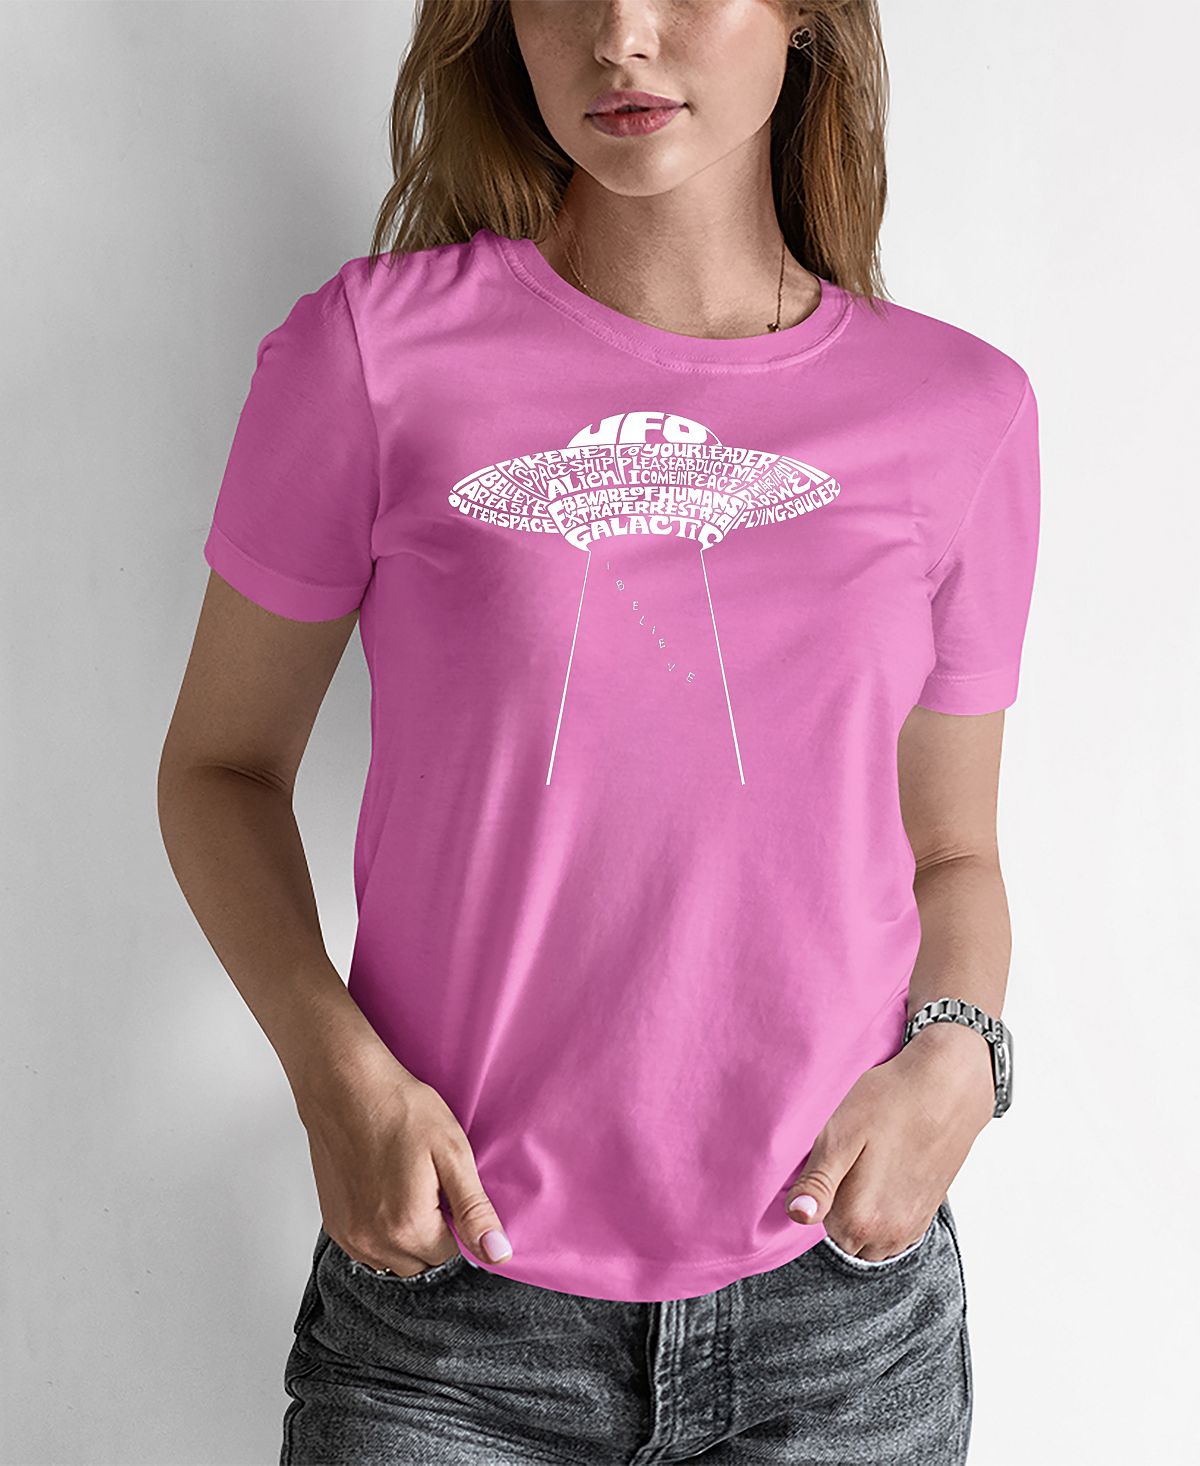 Женская футболка word art flying saucer ufo LA Pop Art, розовый фото